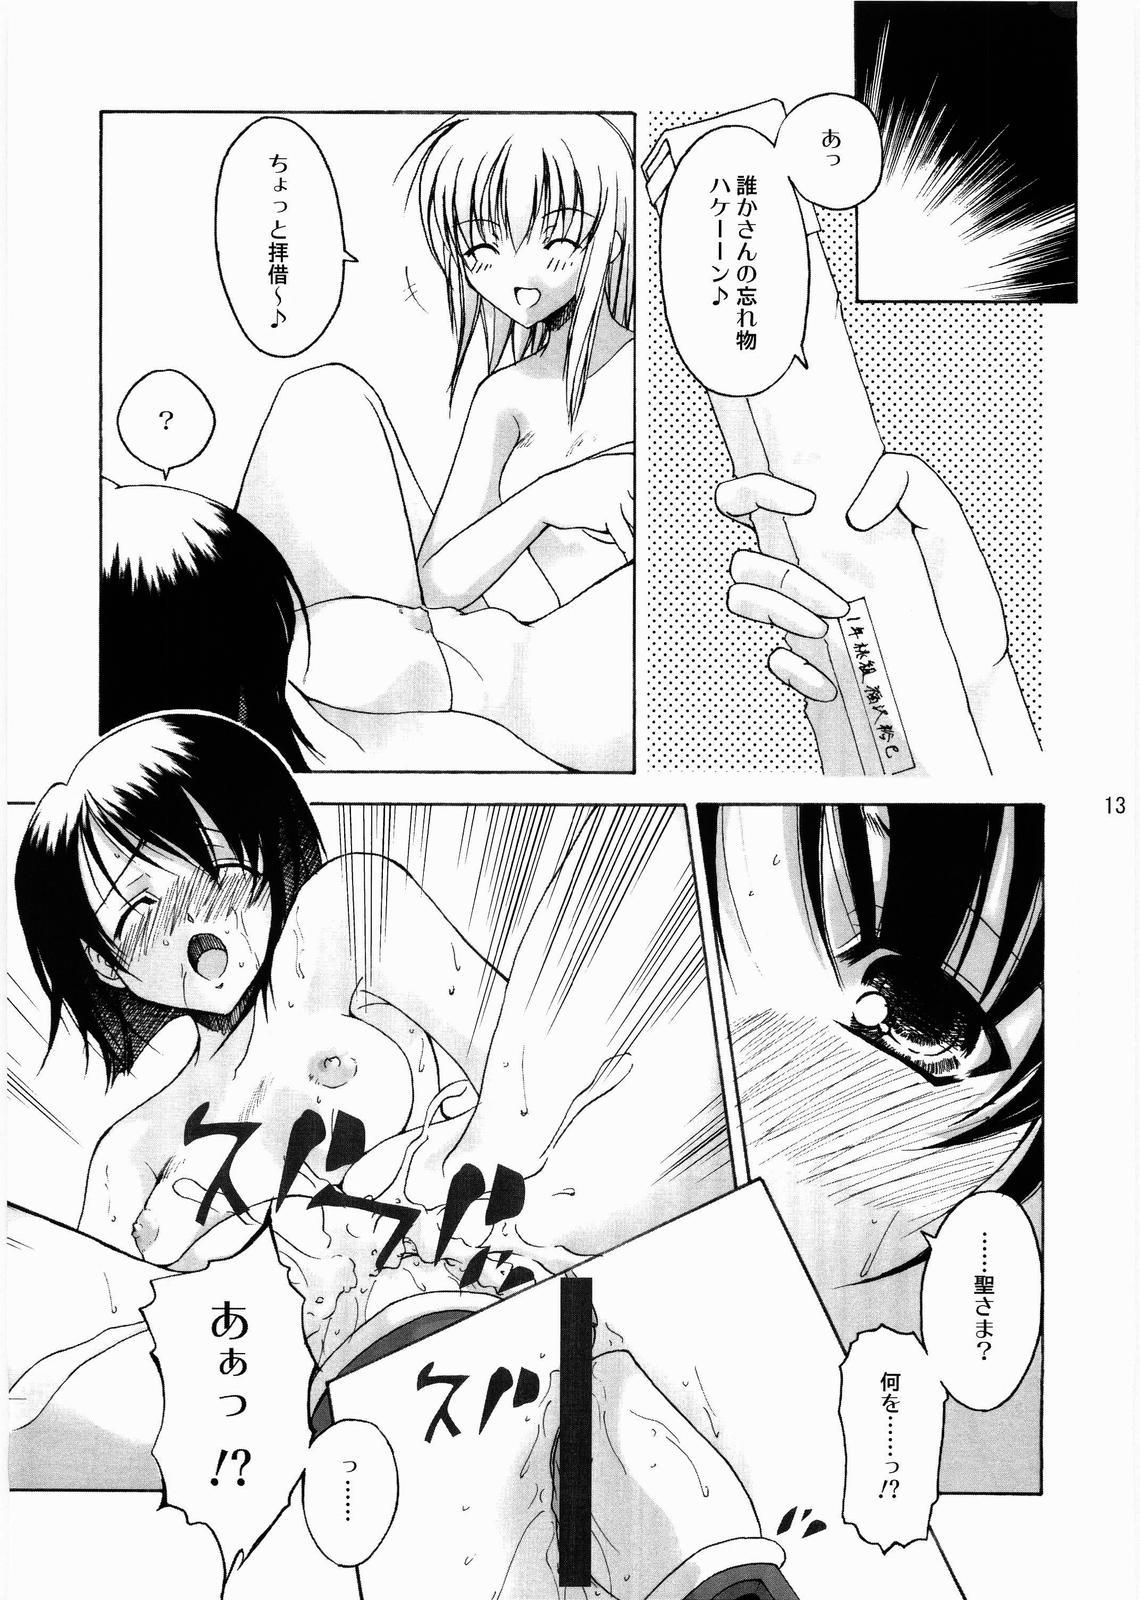 Buttfucking Anata no Hitomi ni... - Maria-sama ga miteru Wetpussy - Page 12